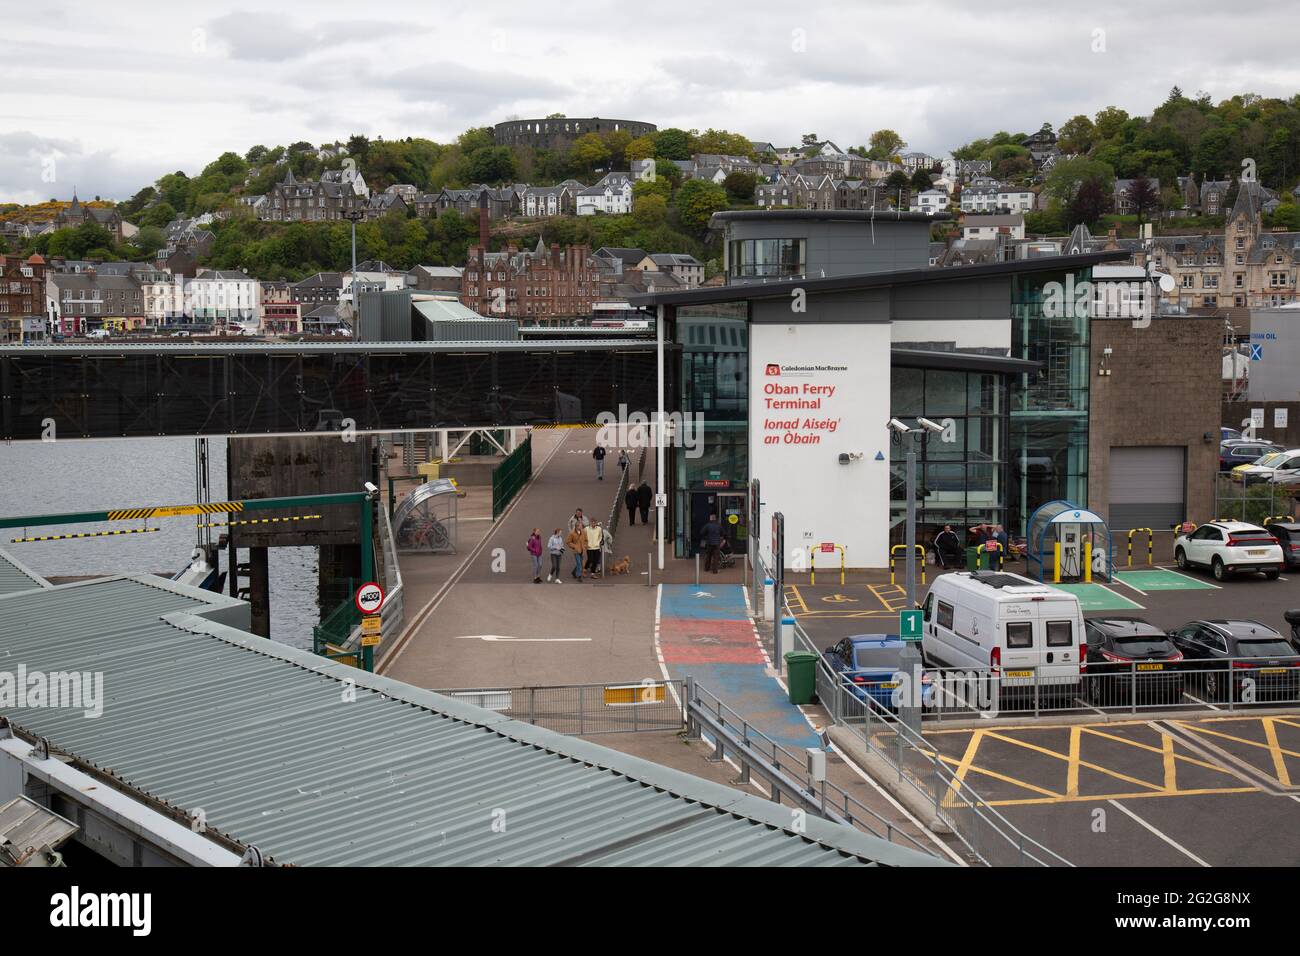 Oban Ferry Terminal, Scotland. Stock Photo